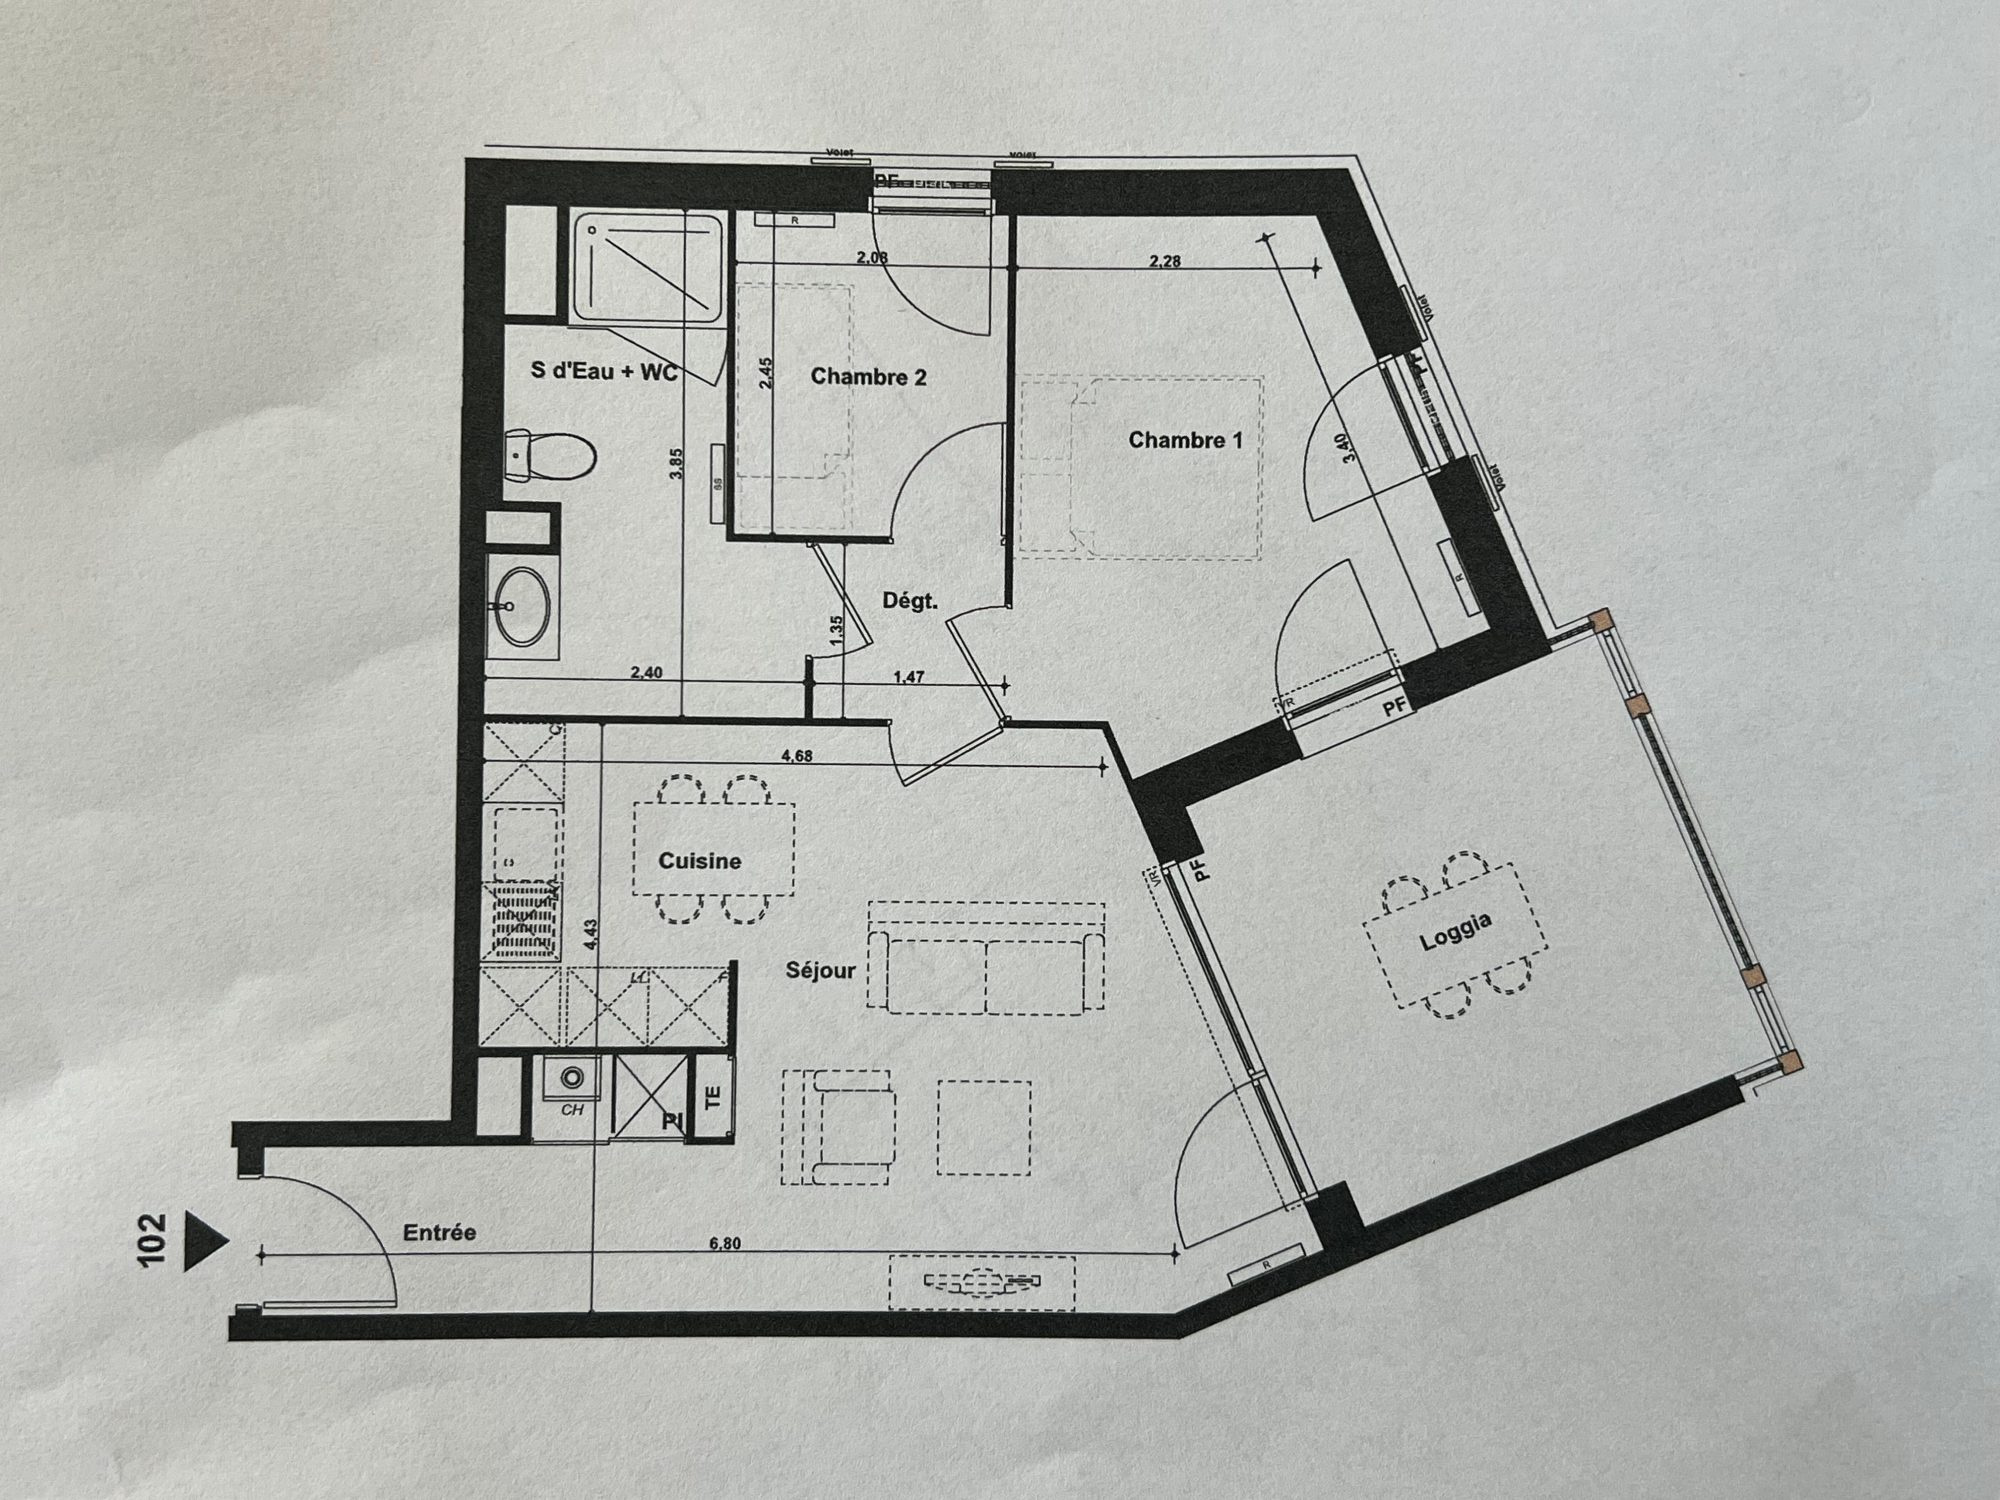 Vente Appartement 52m² 3 Pièces à Andernos-les-Bains (33510) - Andernos Immobilier